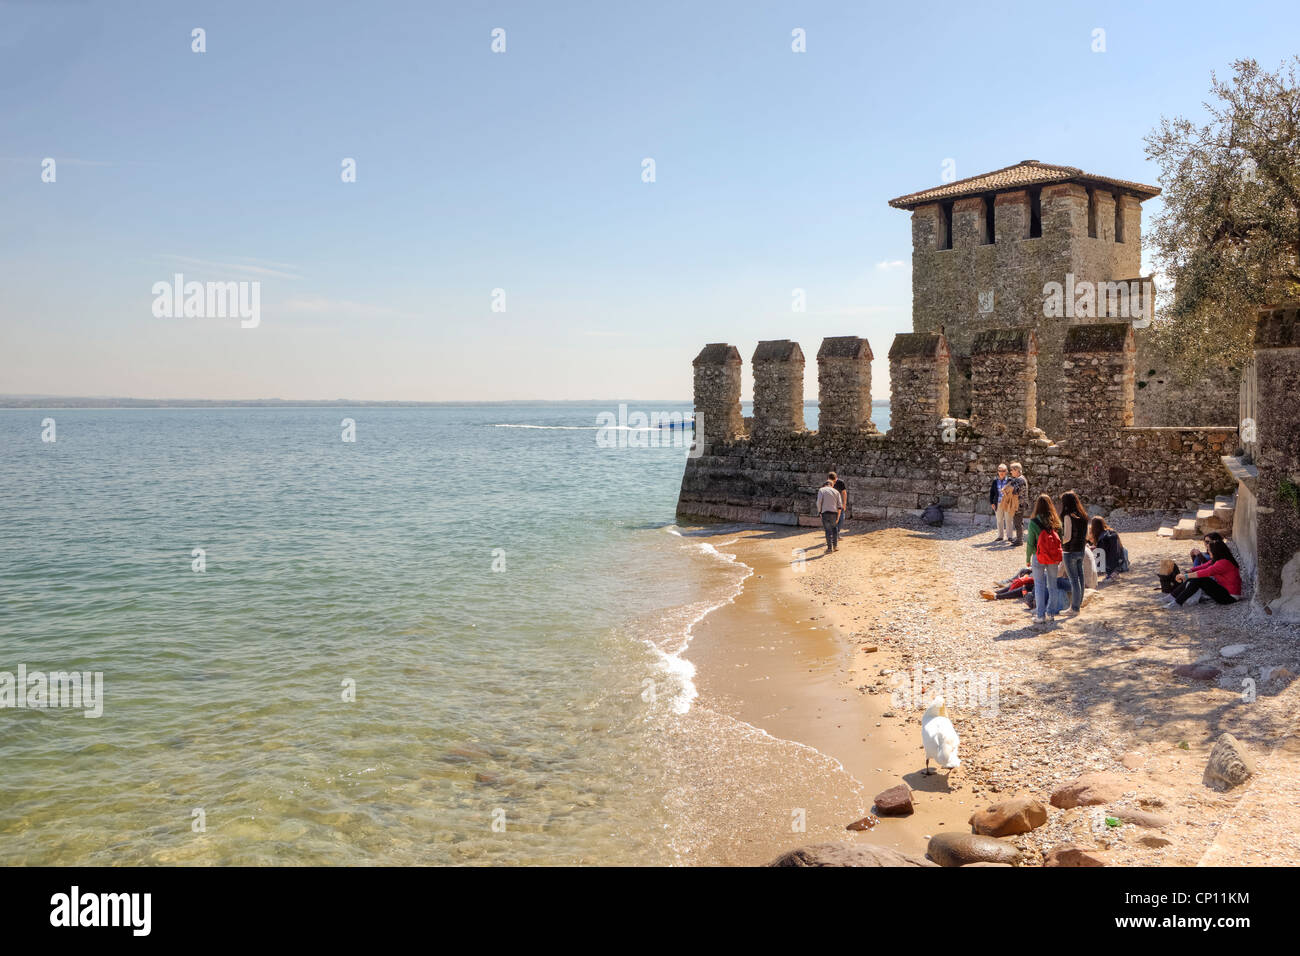 Spiaggia privata sul lago di Garda ai piedi del castello scaligero di Sirmione, Lombardia, Italia Foto Stock